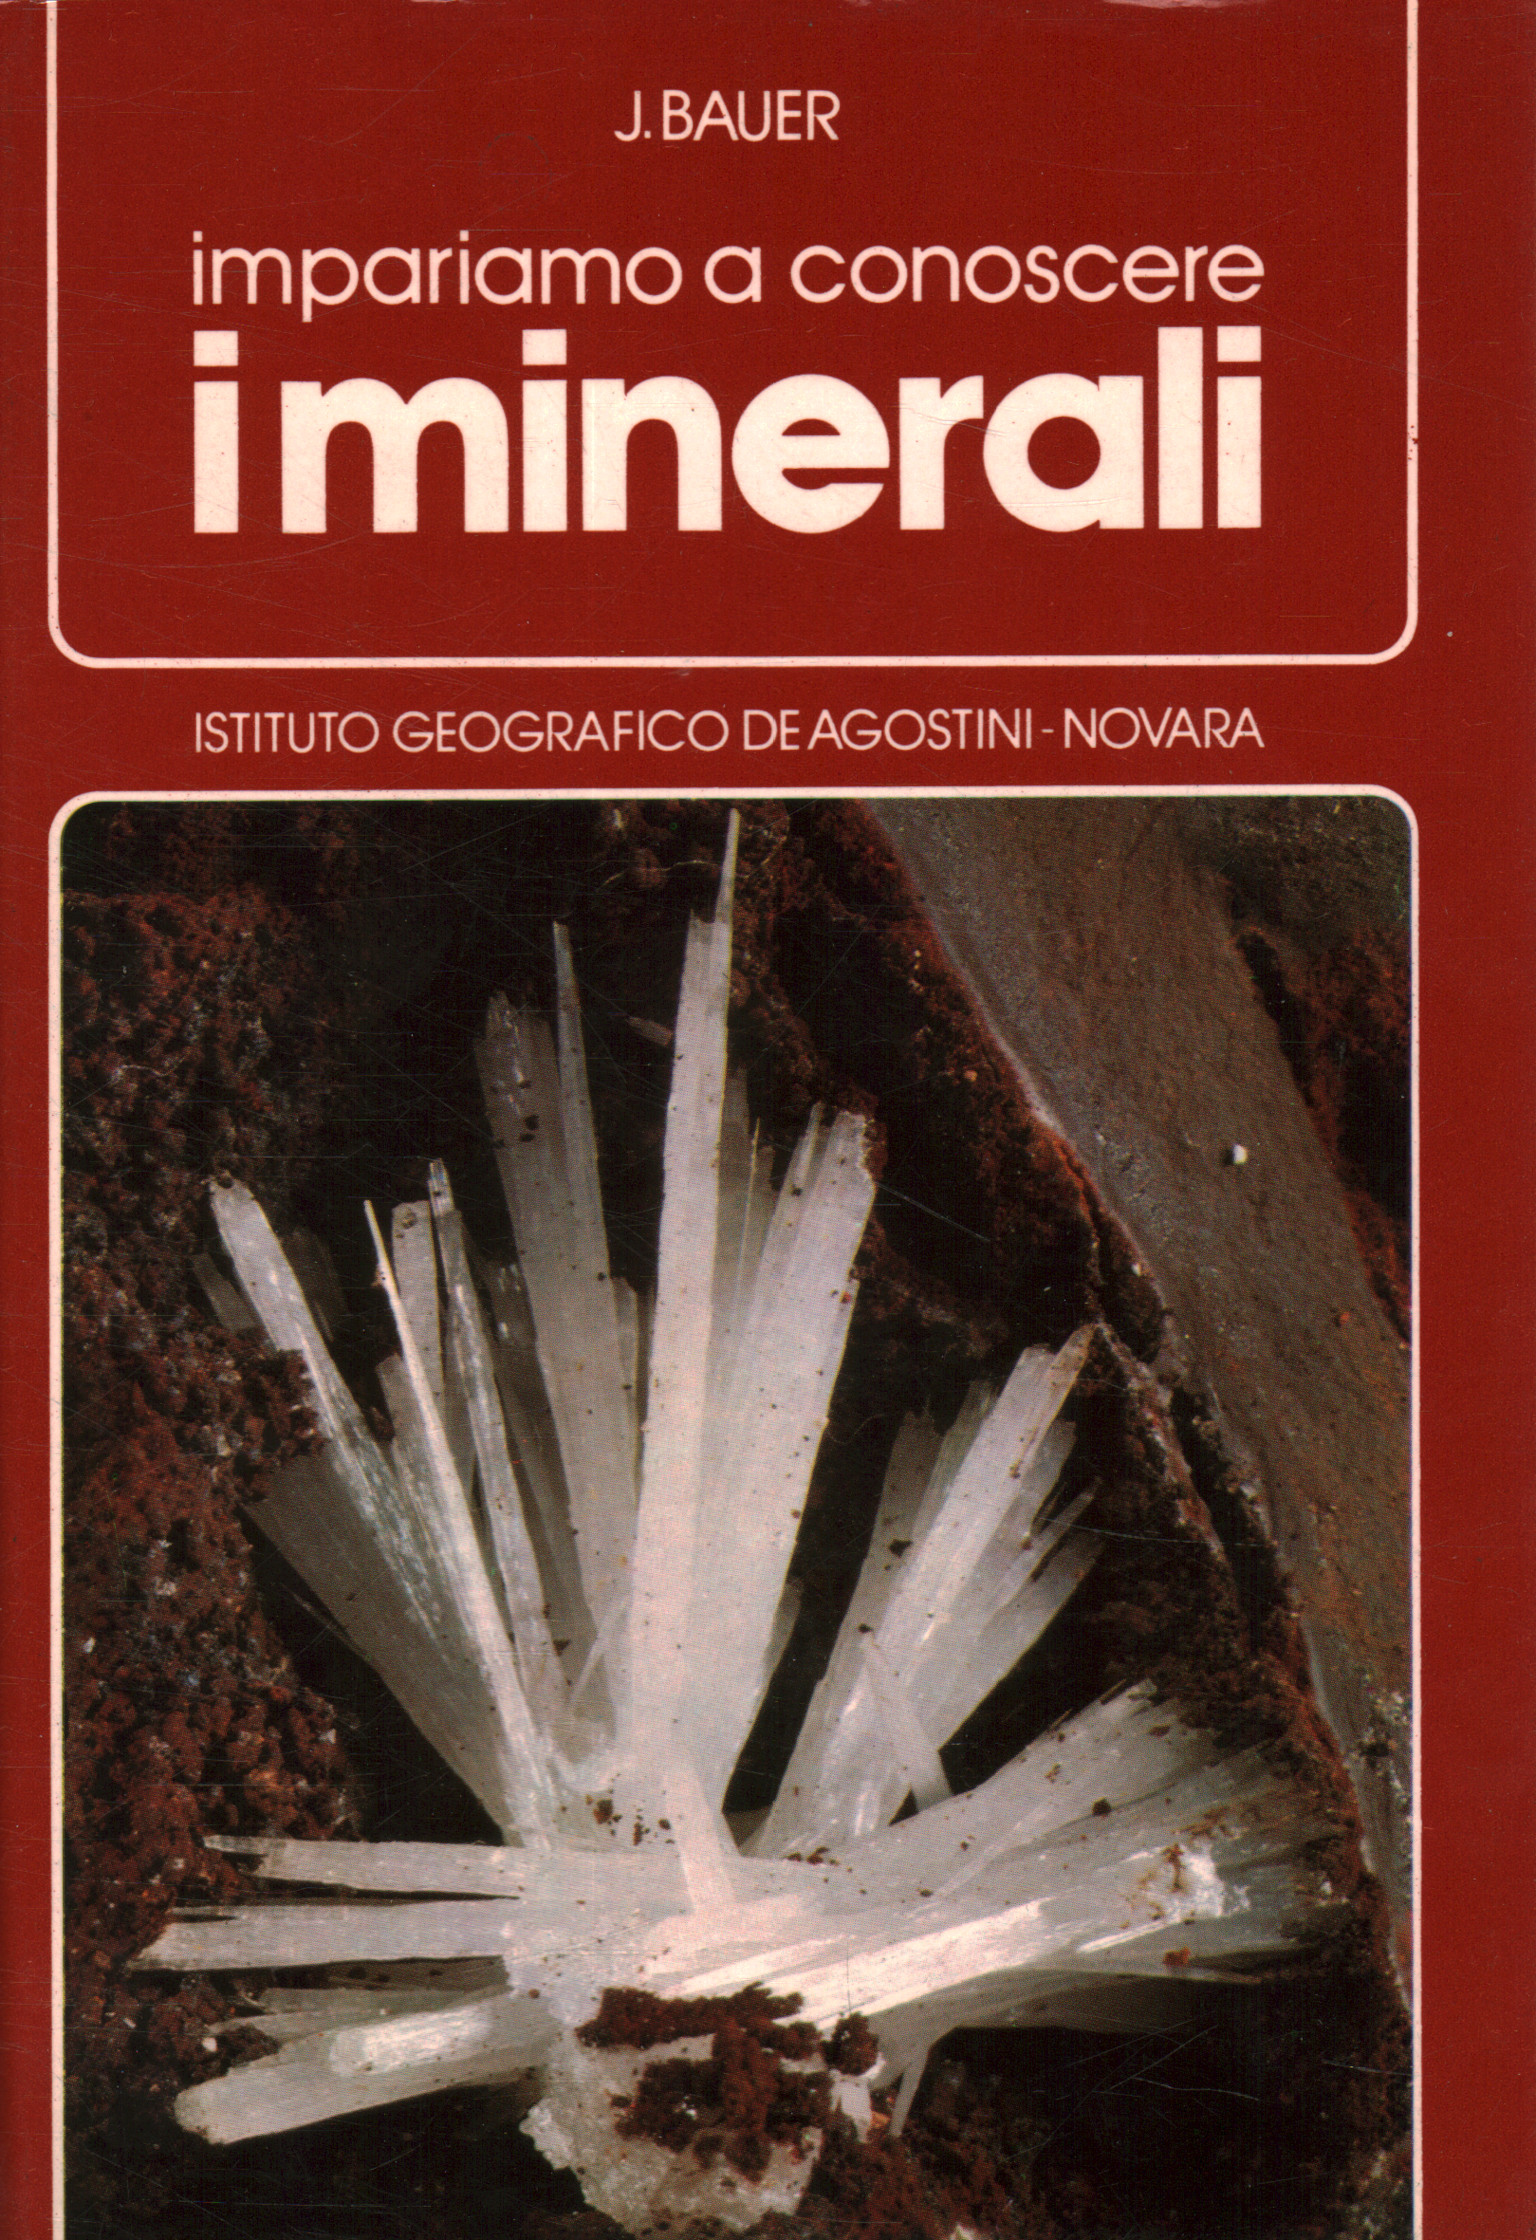 Aprendamos sobre los minerales.